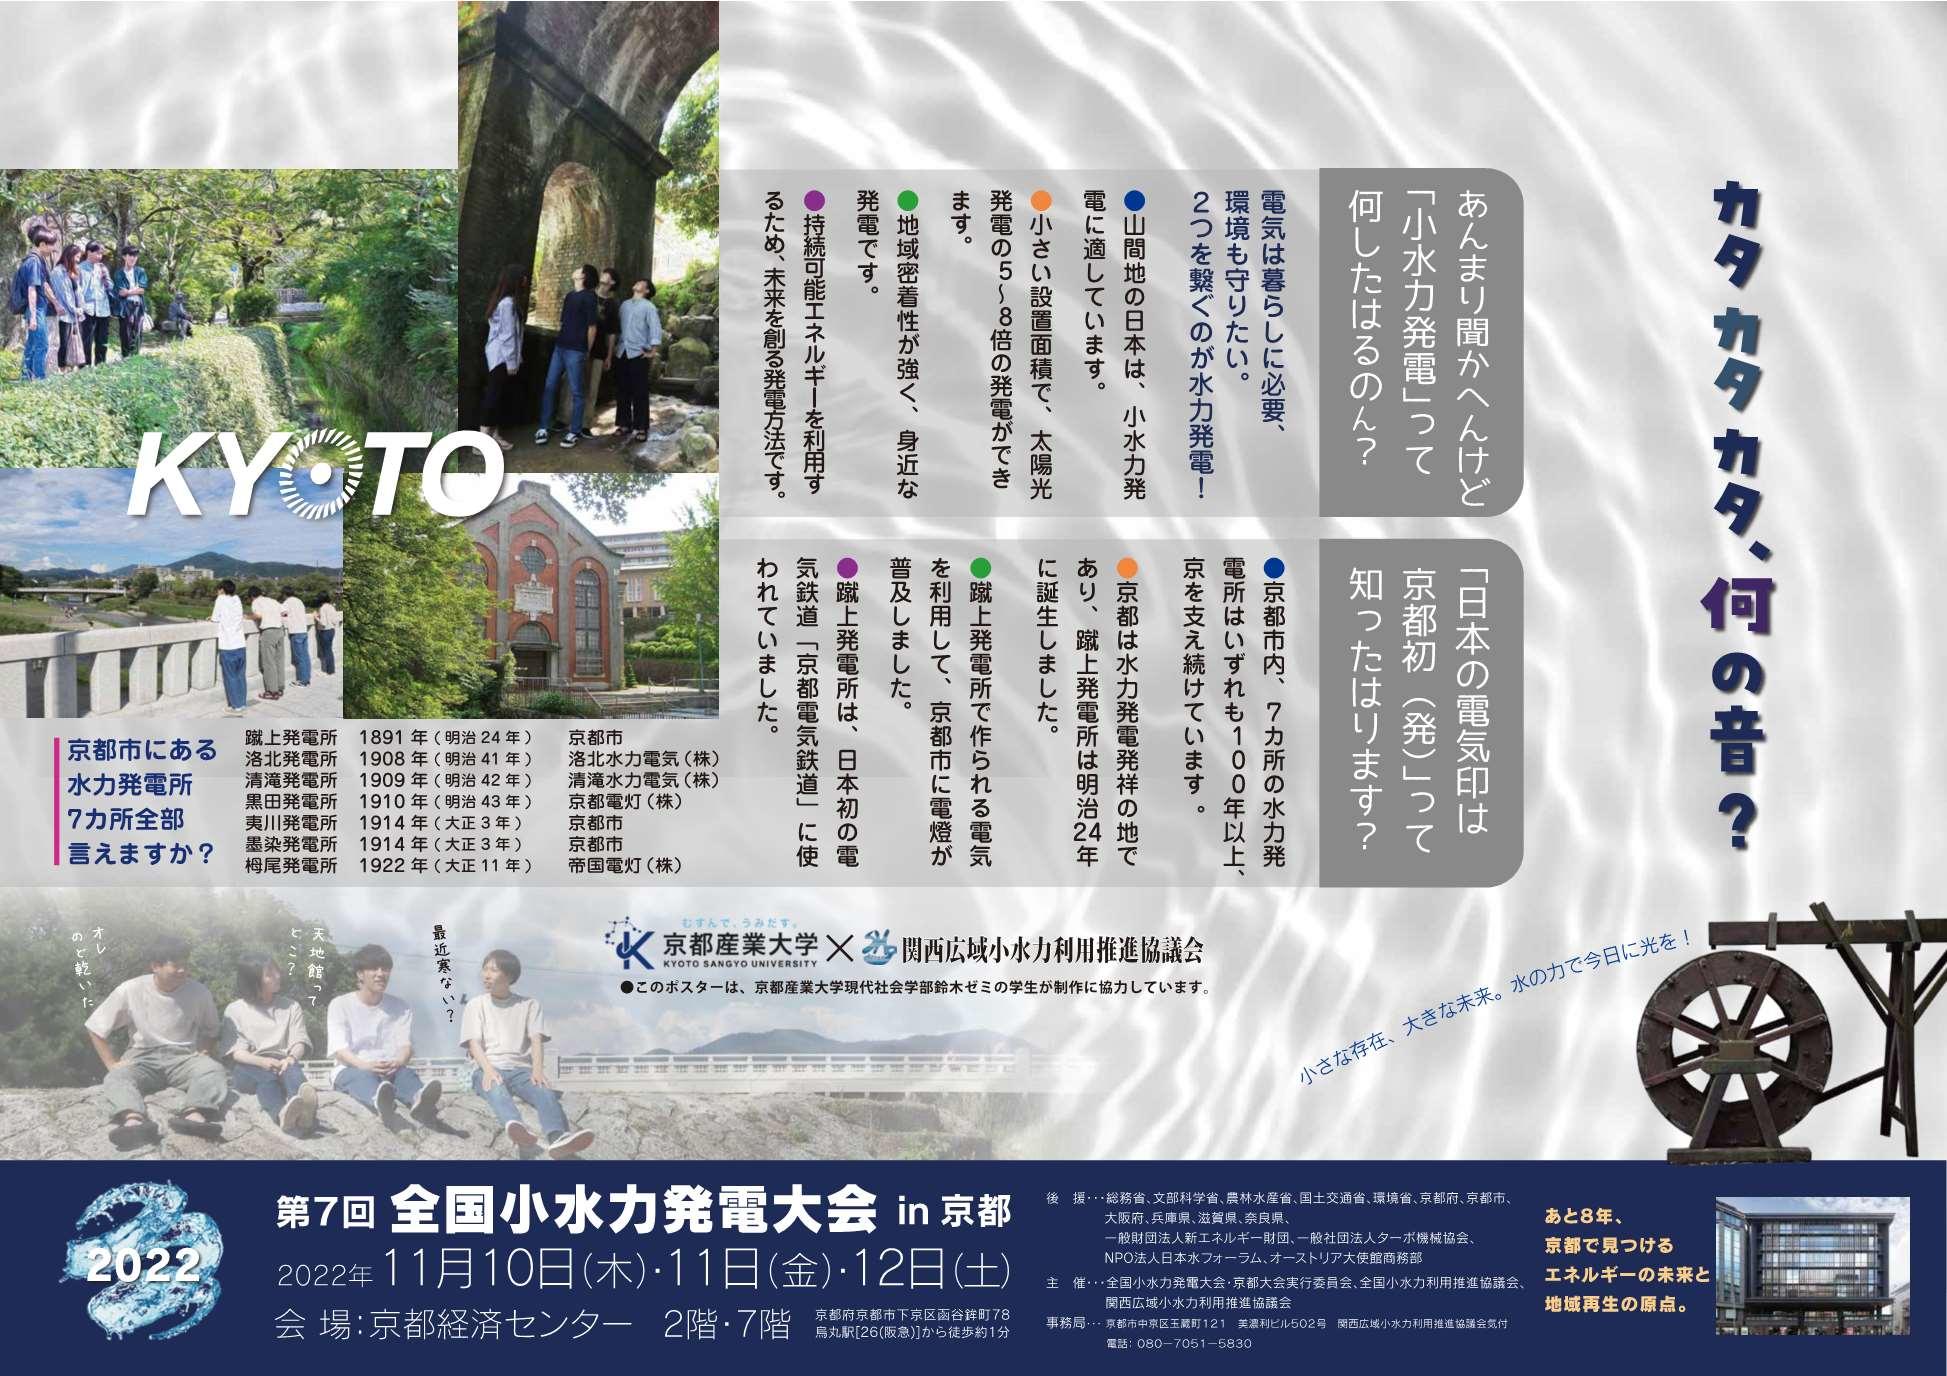 【京都産業大学】再生可能エネルギー「小水力発電」を知っていますか？京都市にて開催される「第7回小水力発電大会」にむけて現代社会学部の学生が大会PRポスターを作成